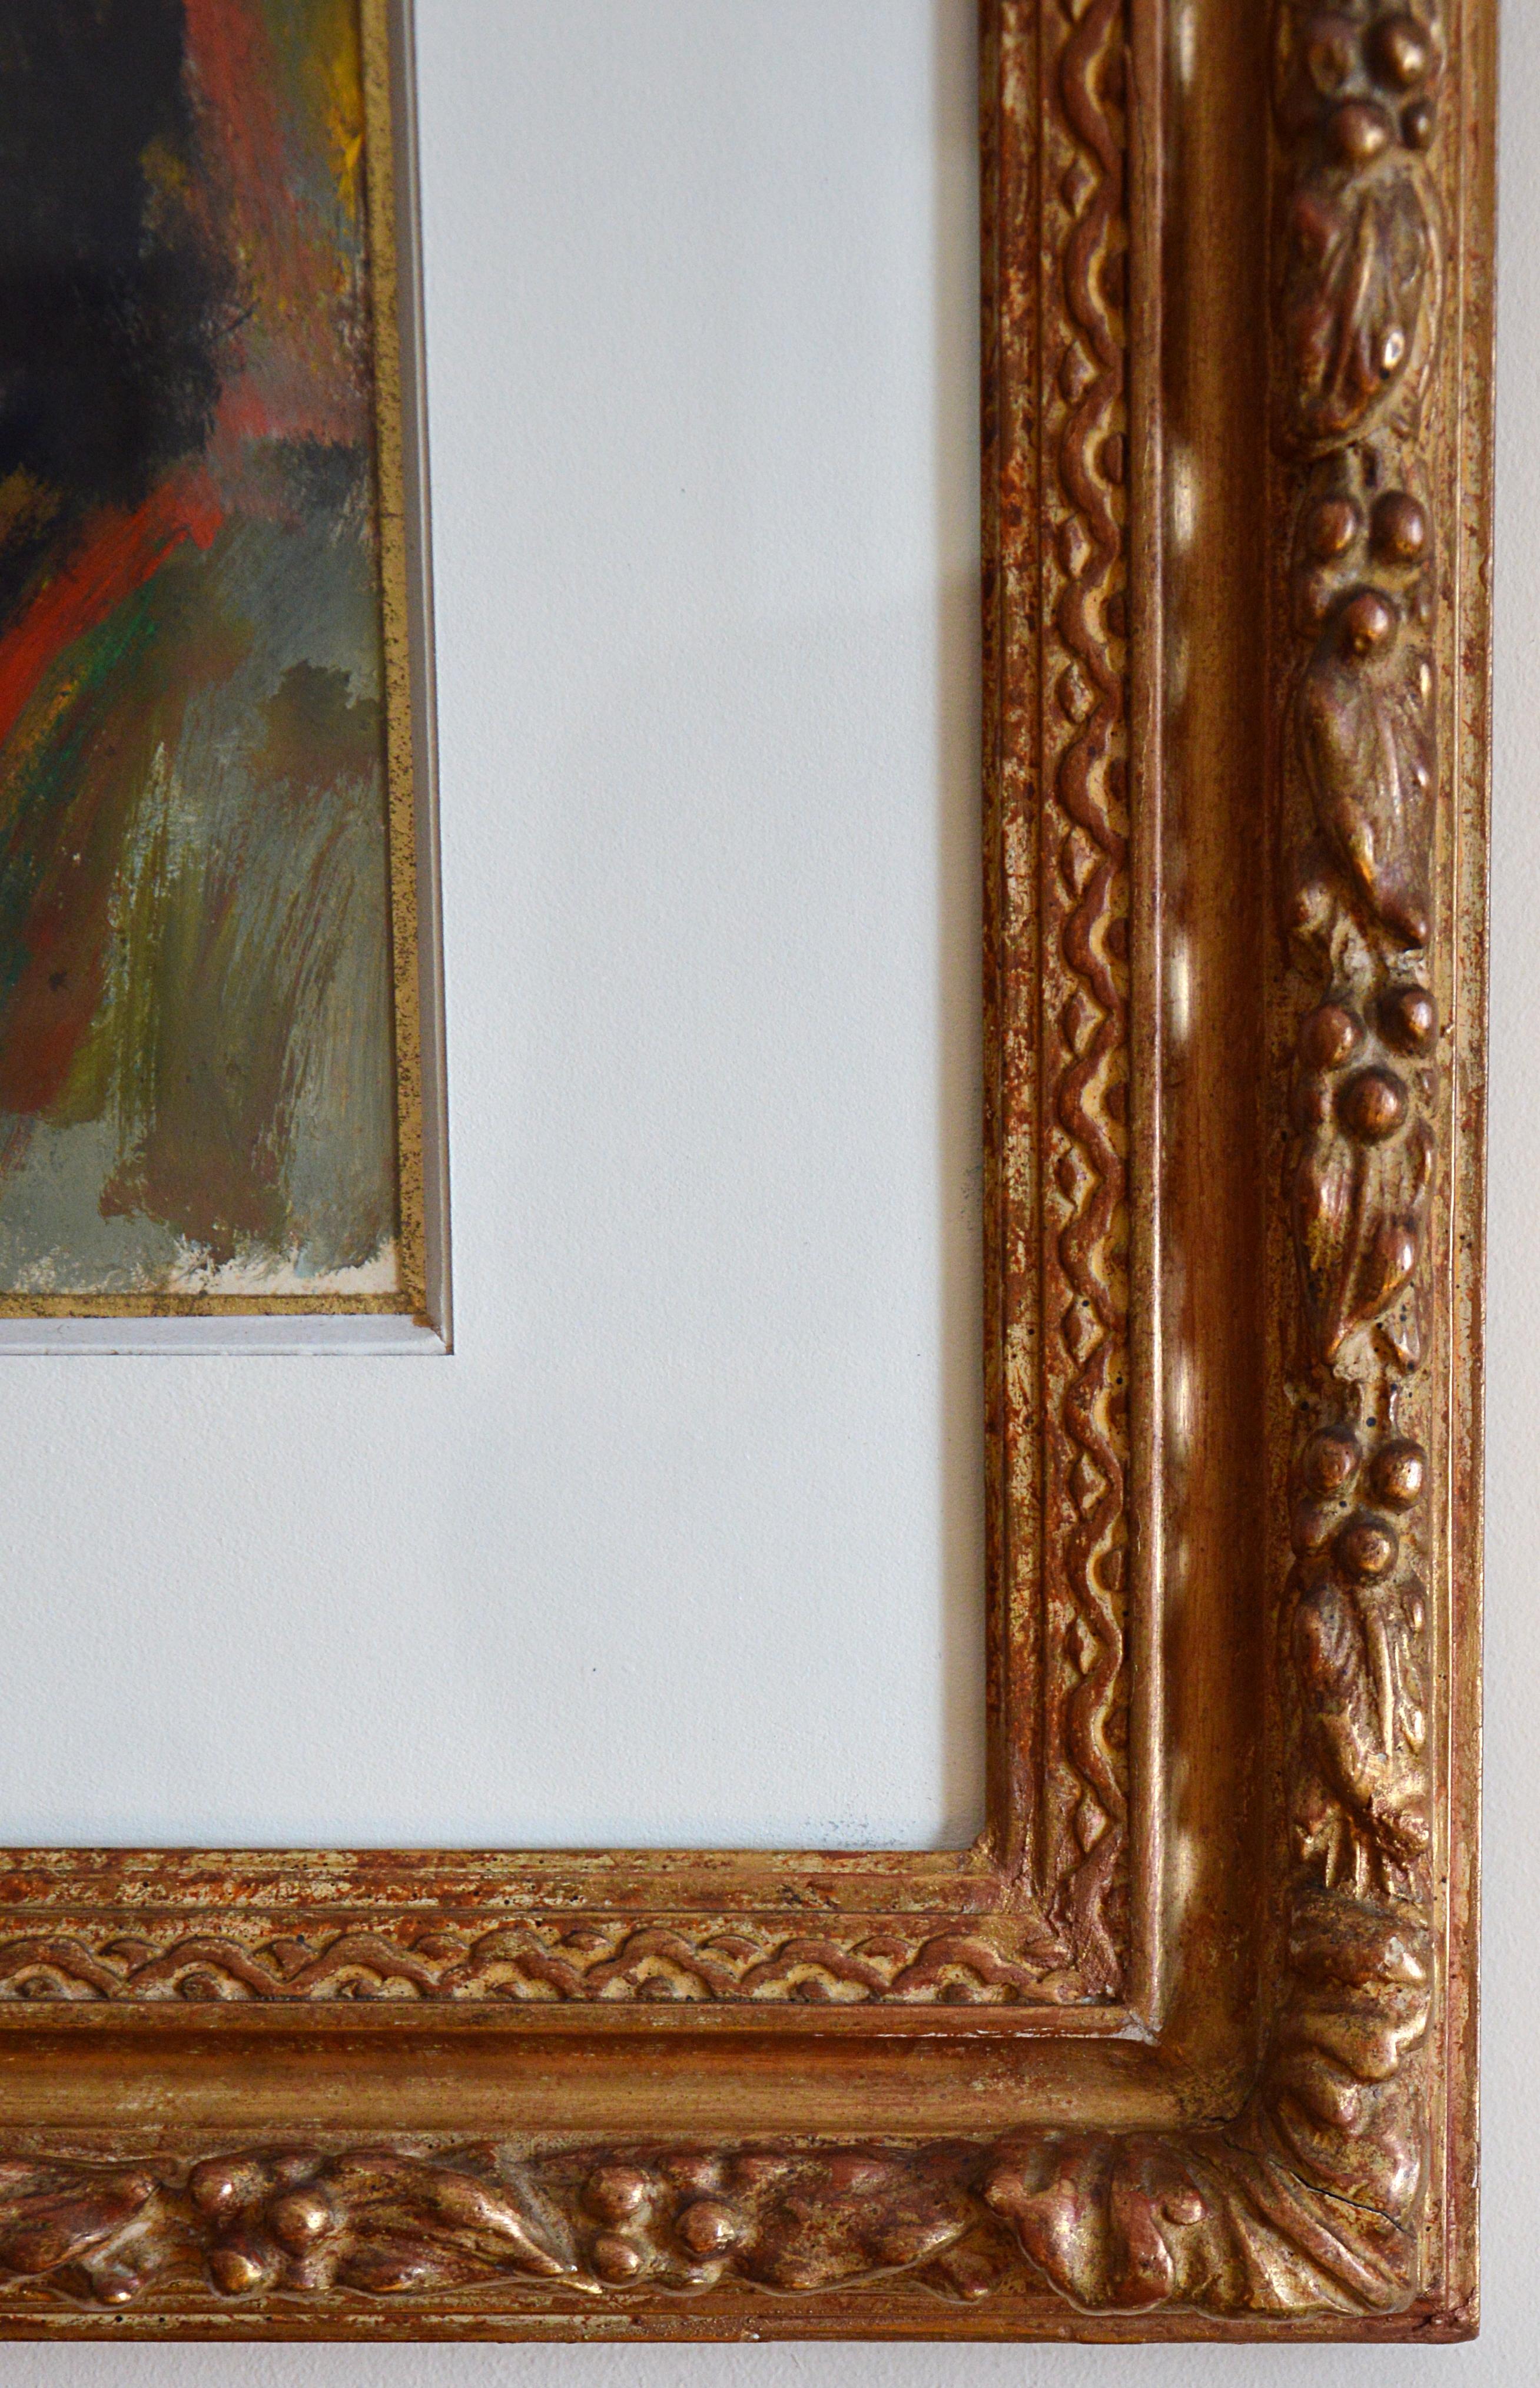 Huile sur papier d'Edouard Goerg (1893-1969), France, 1937-1938. Deux jeunes filles espagnoles. Dimensions : avec cadre : 61.3x51.8 cm - 24.1x20.4 inches, vue : 39x28.6 cm - 15.4x11.25 pouces. Signature en bas à gauche 